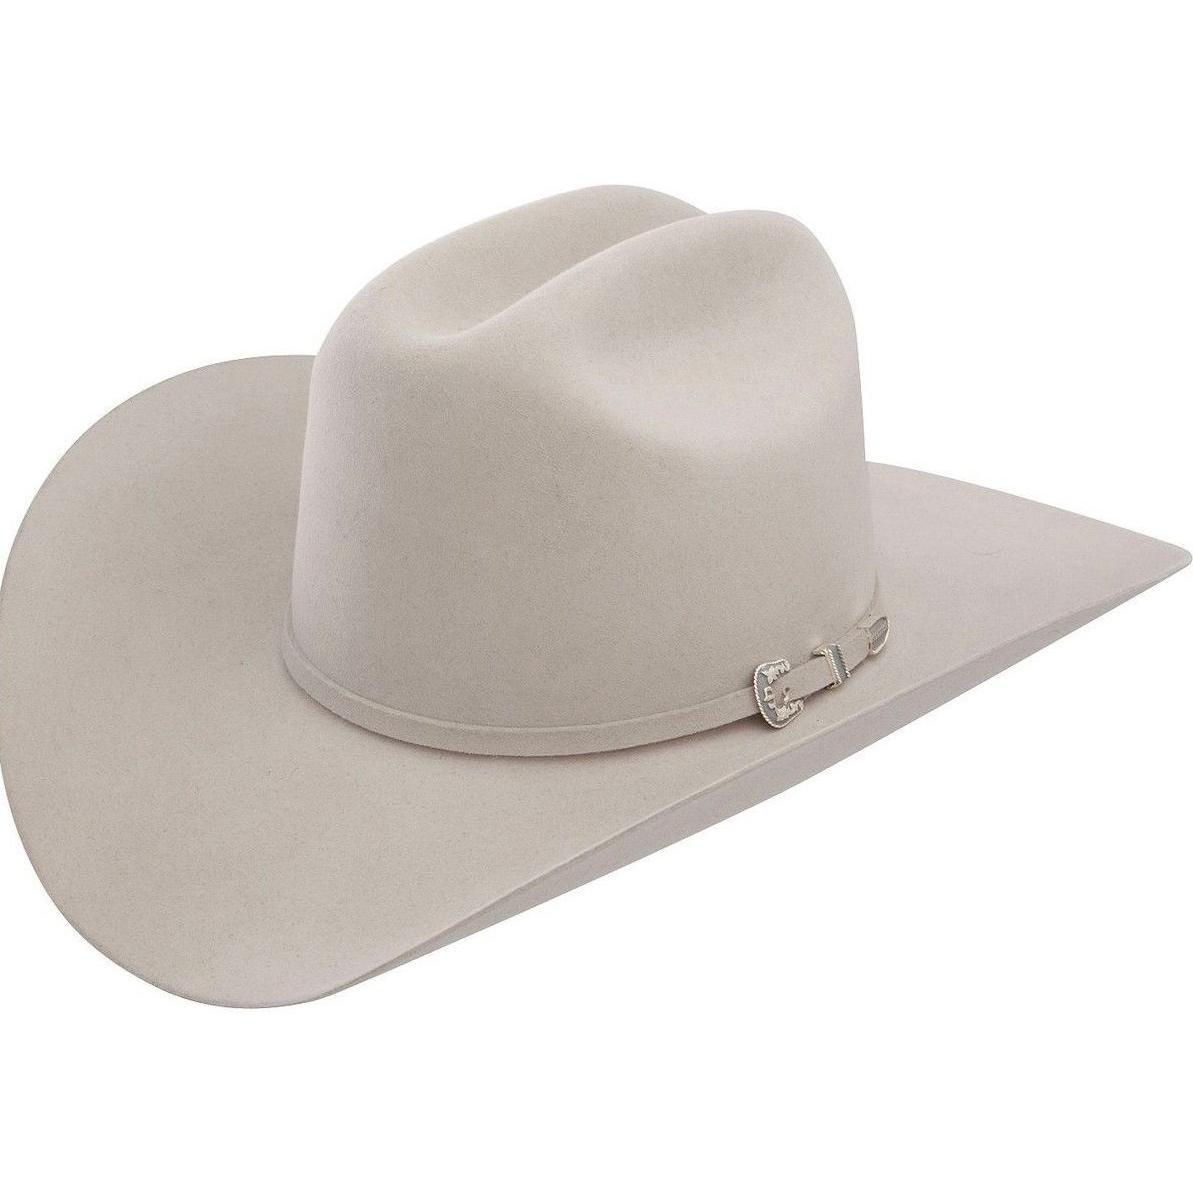 6x Stetson Skyline Fur Felt Cowboy Hat White Rugged Cowboy